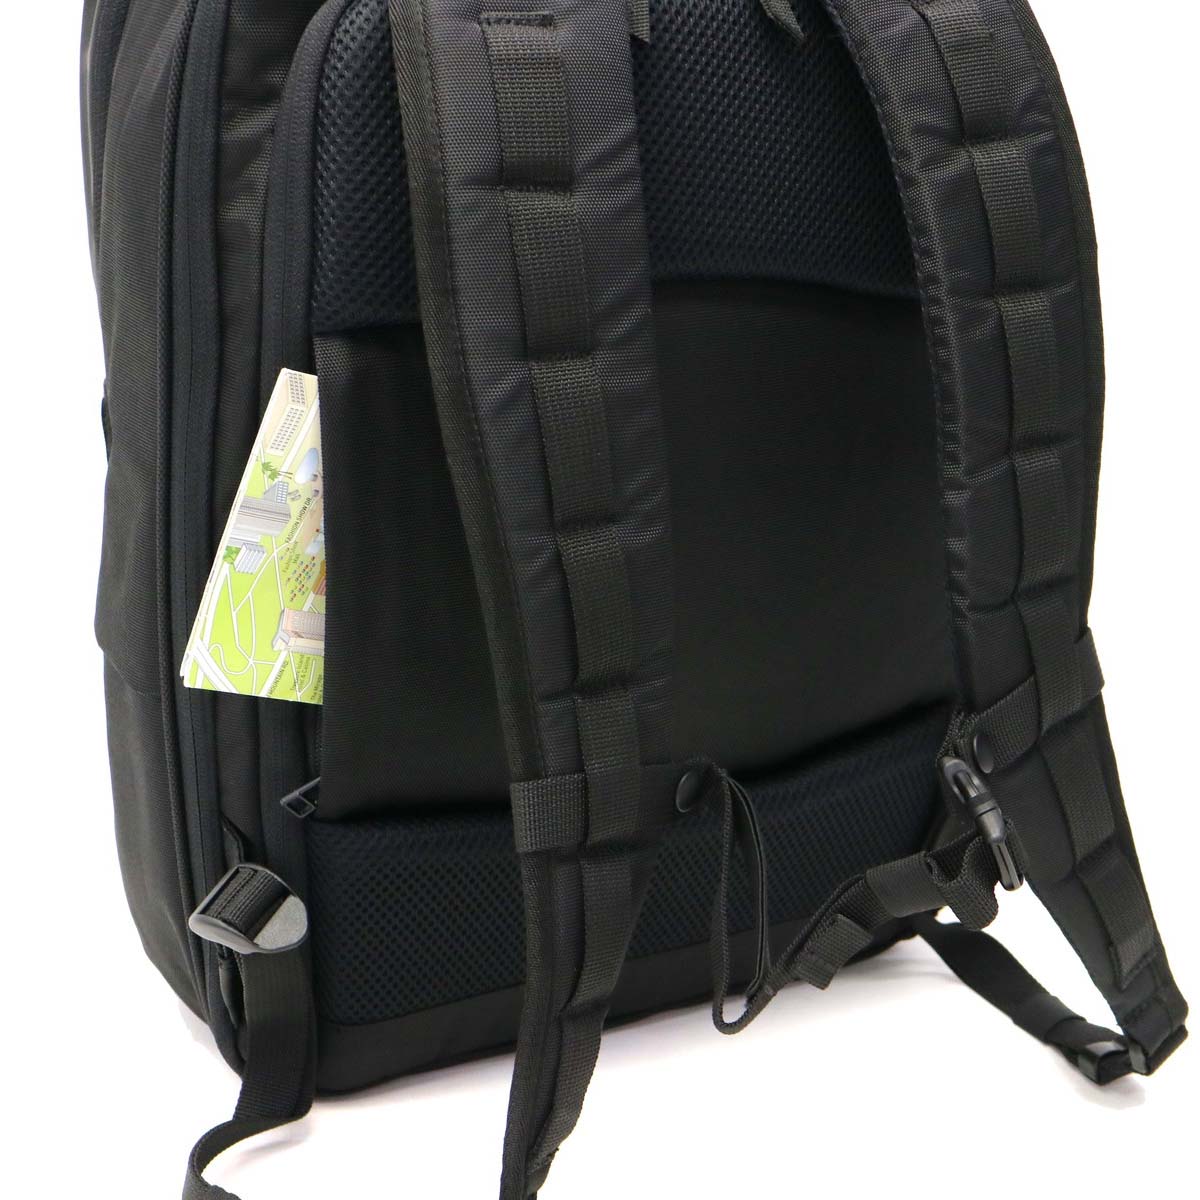 ヌンク リュック nunc バッグ リュックサック バックパック Rectangle Backpack デイパック PC 通勤 通学 メンズ  レディース NN002010